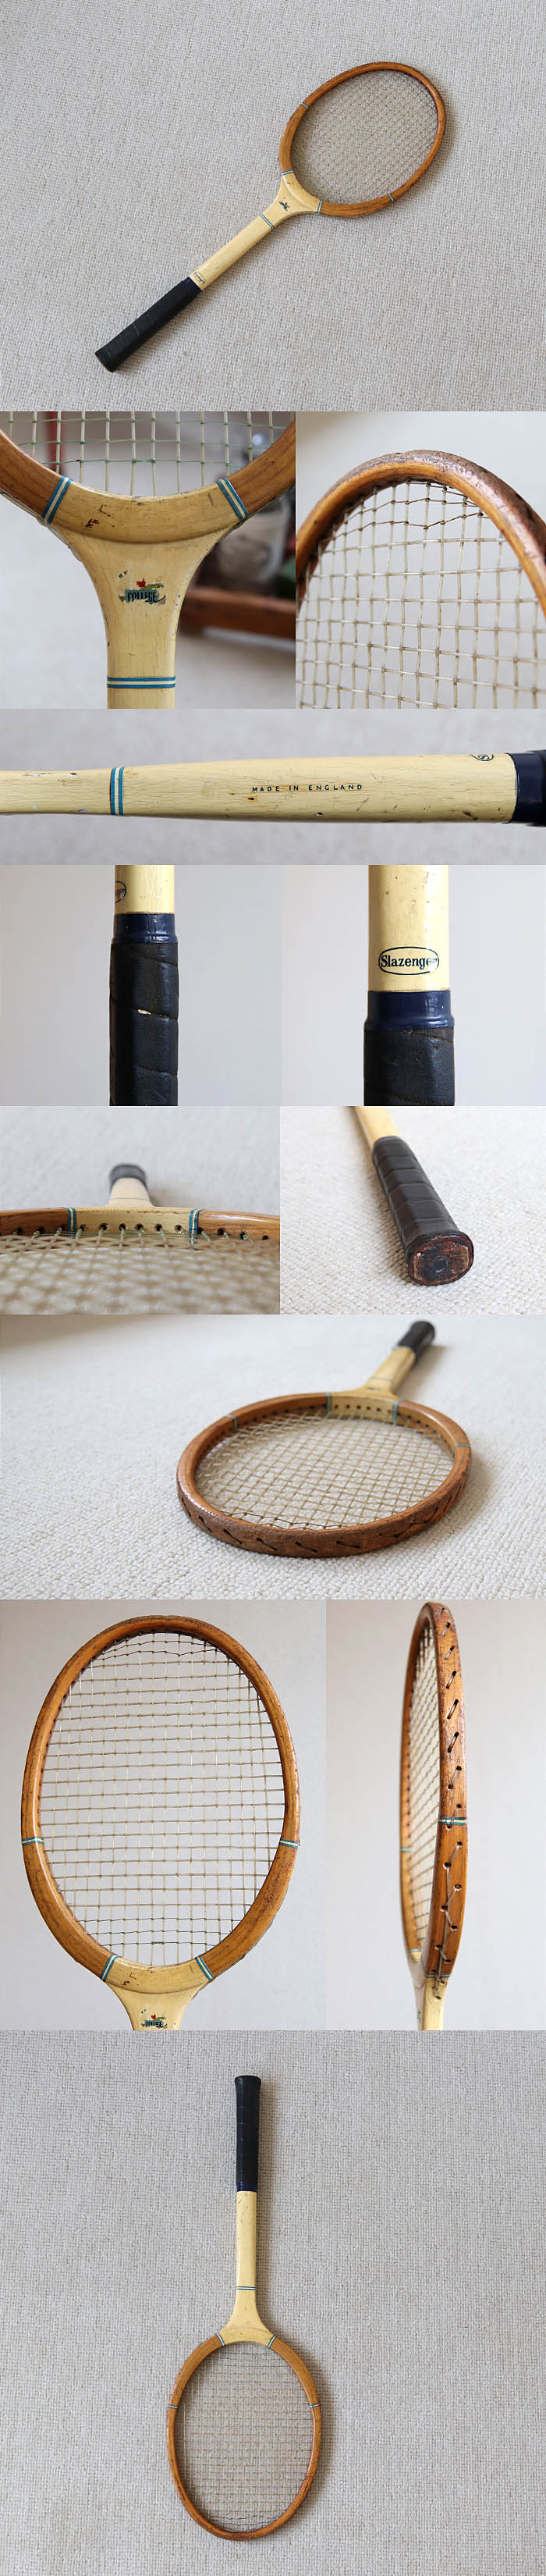 イギリス ビンテージ テニスラケット/木製/インテリア雑貨